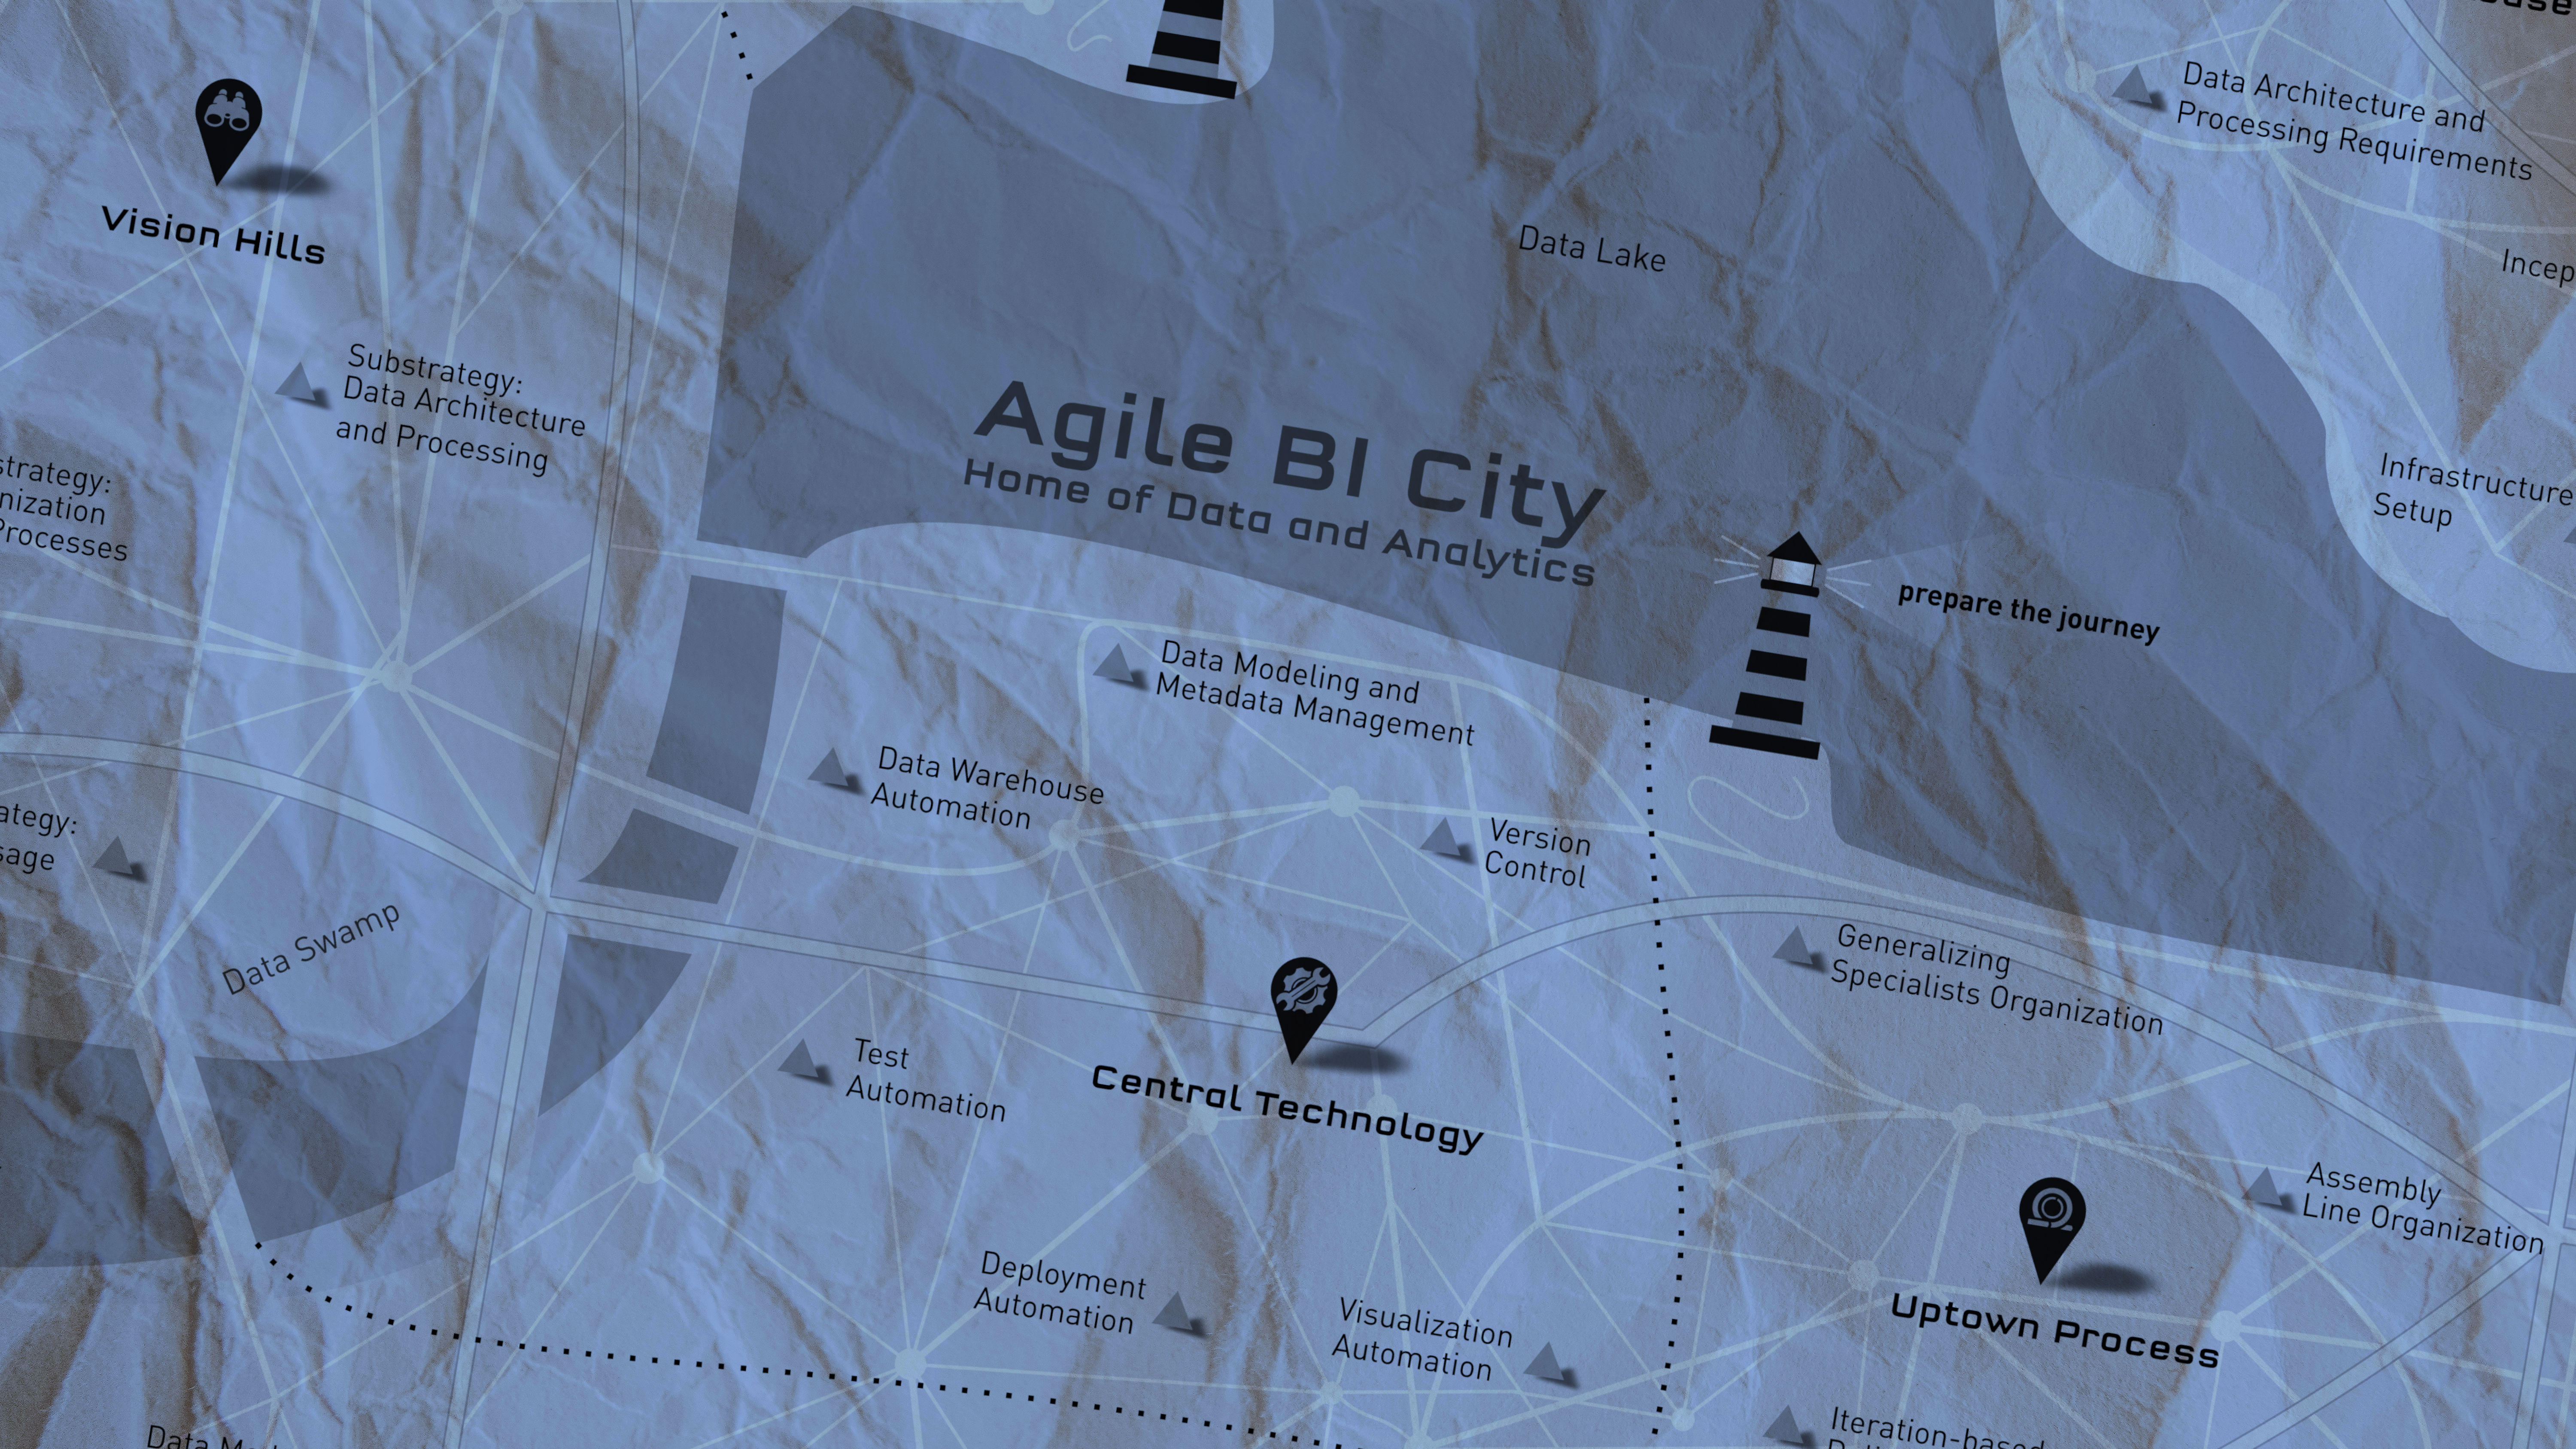 Agile BI City